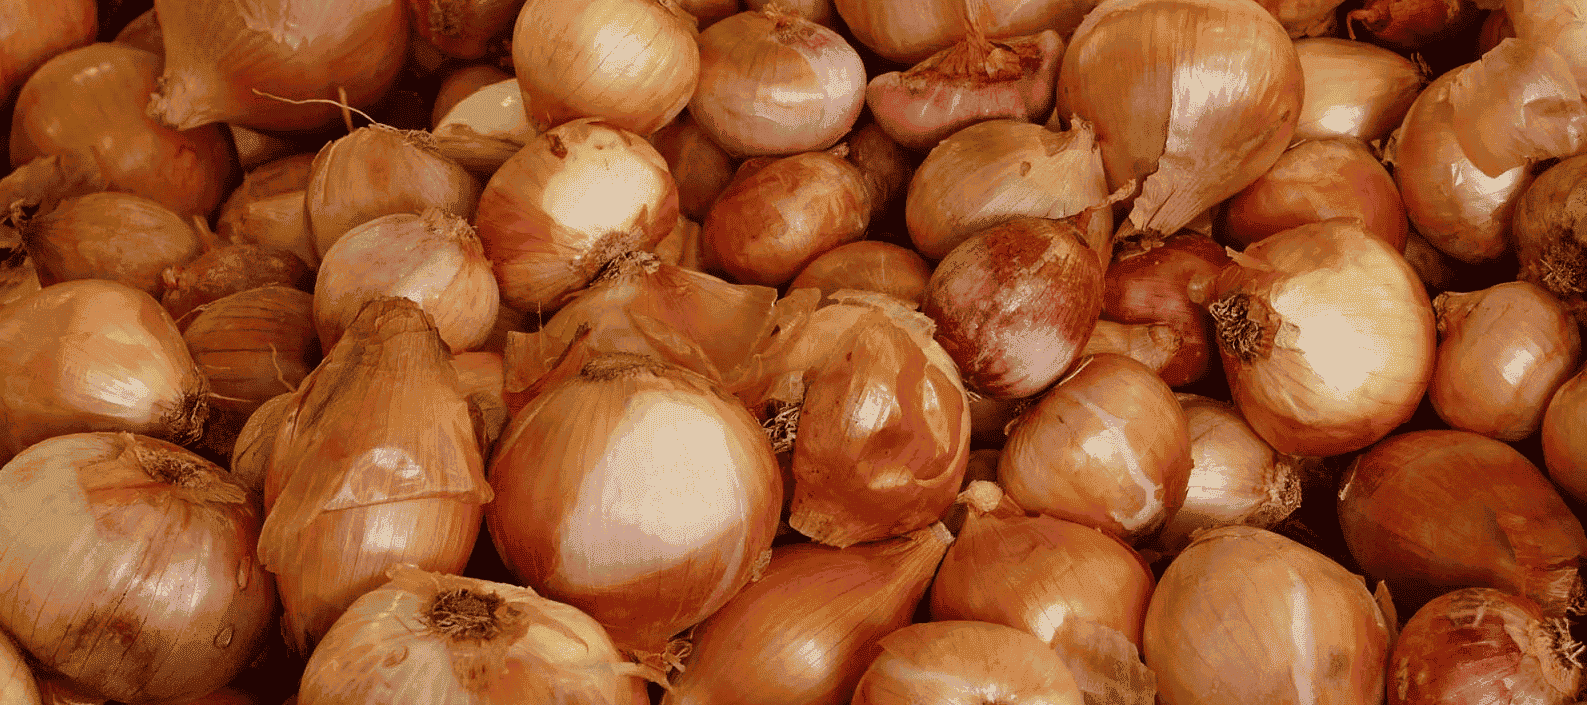 استصدار قرار باستمرار منع تصدير محصول البصل حتى 30 مارس المقبل